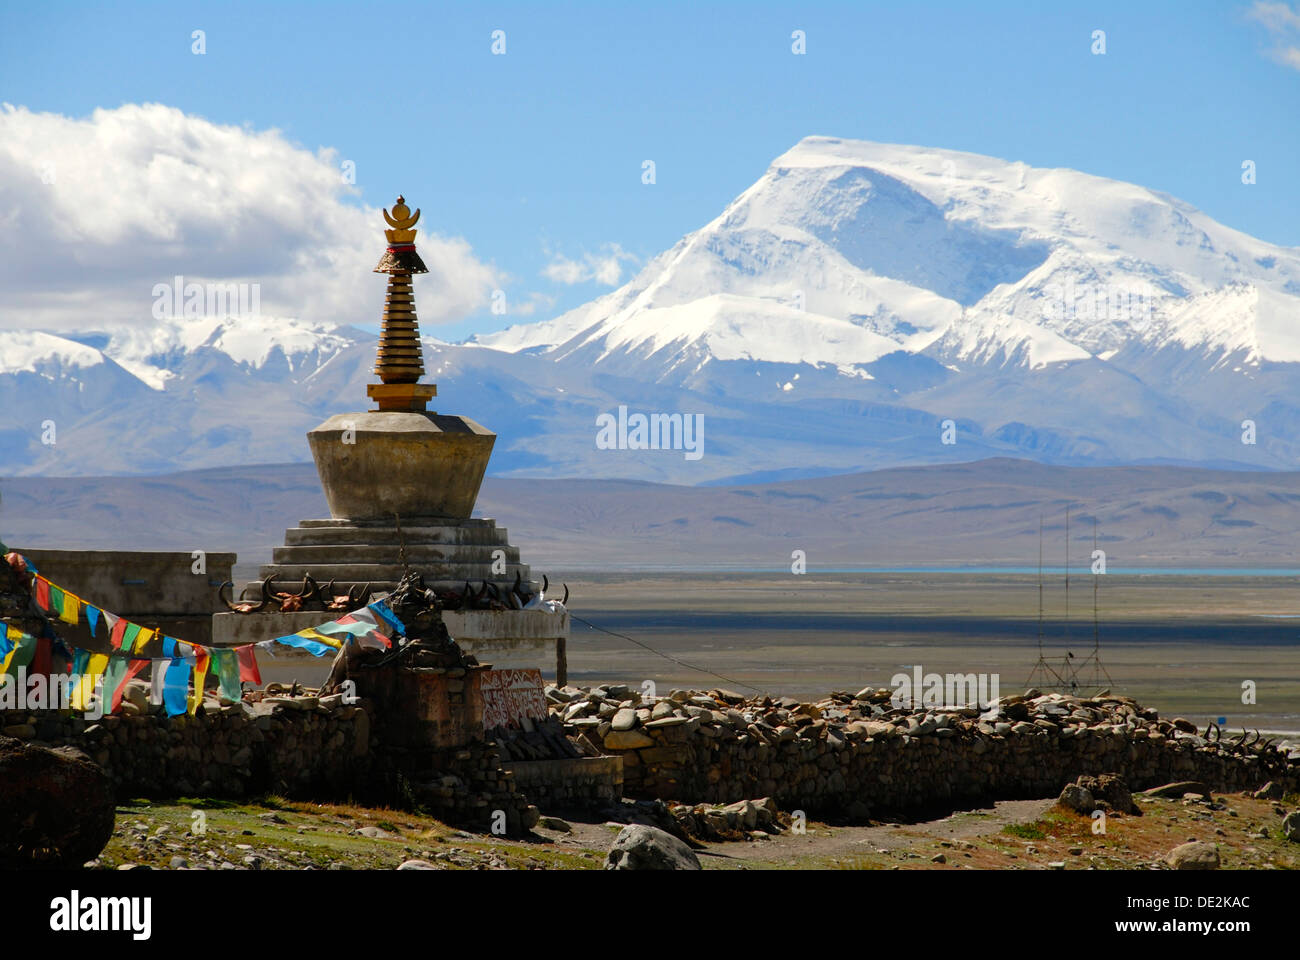 Le bouddhisme tibétain, chorten stupa, Darchen, pèlerinage, la montagne couverte de neige Gurla Mandhata, Kailash, région de l'himalaya Banque D'Images